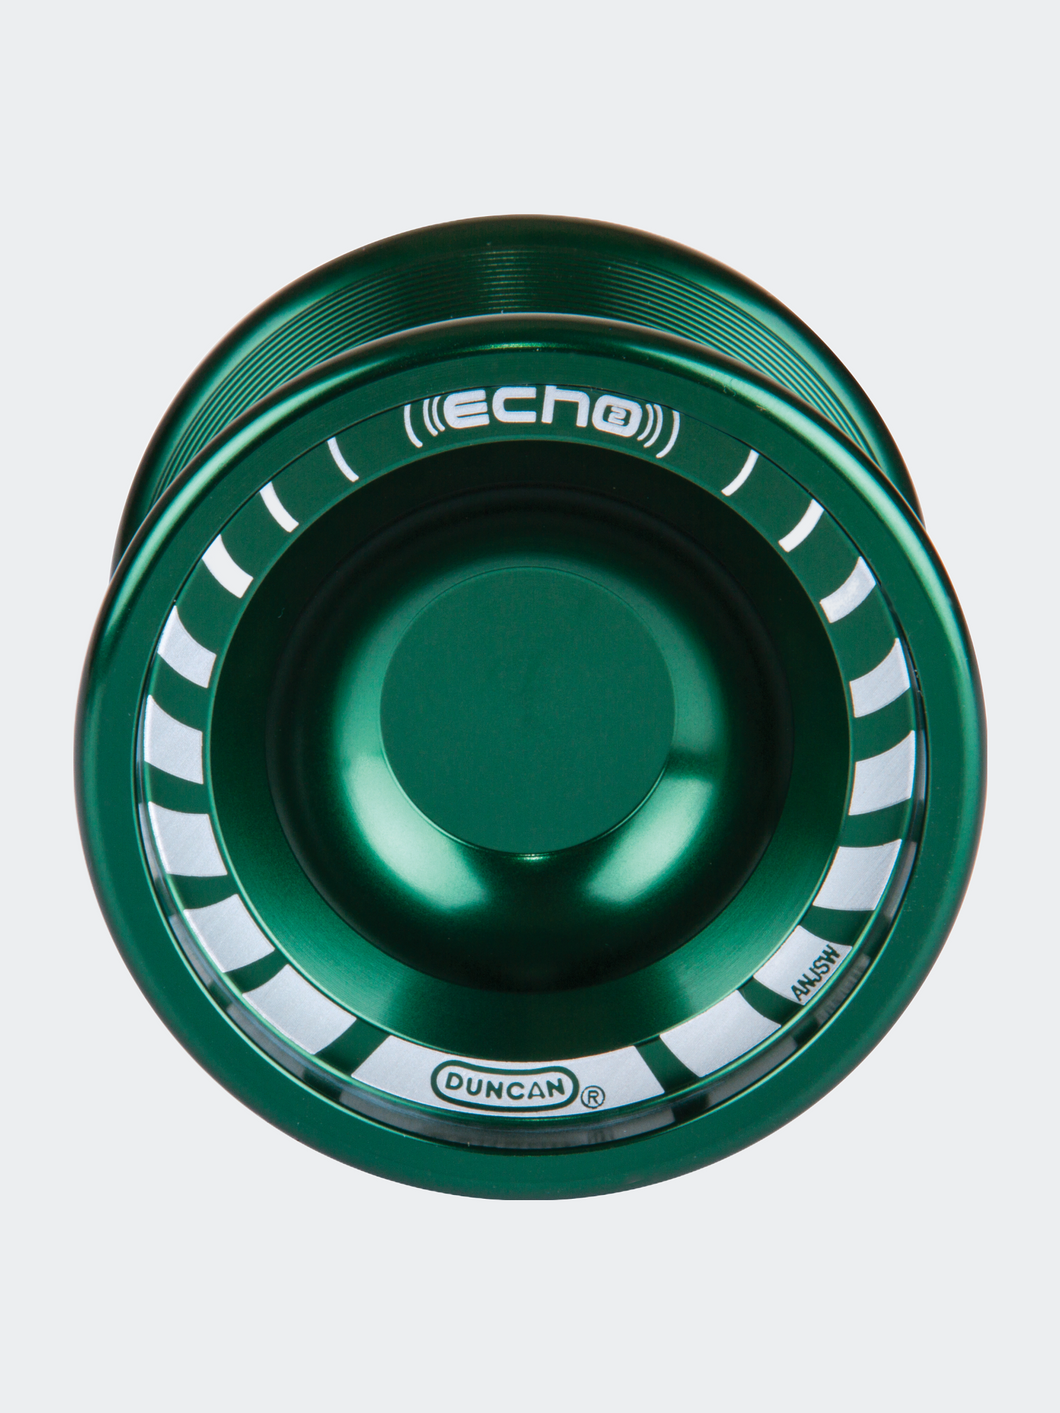 Echo 2 Yo-Yo [Green], Unresponsive Pro Level Yo-Yo, Concave Bearing